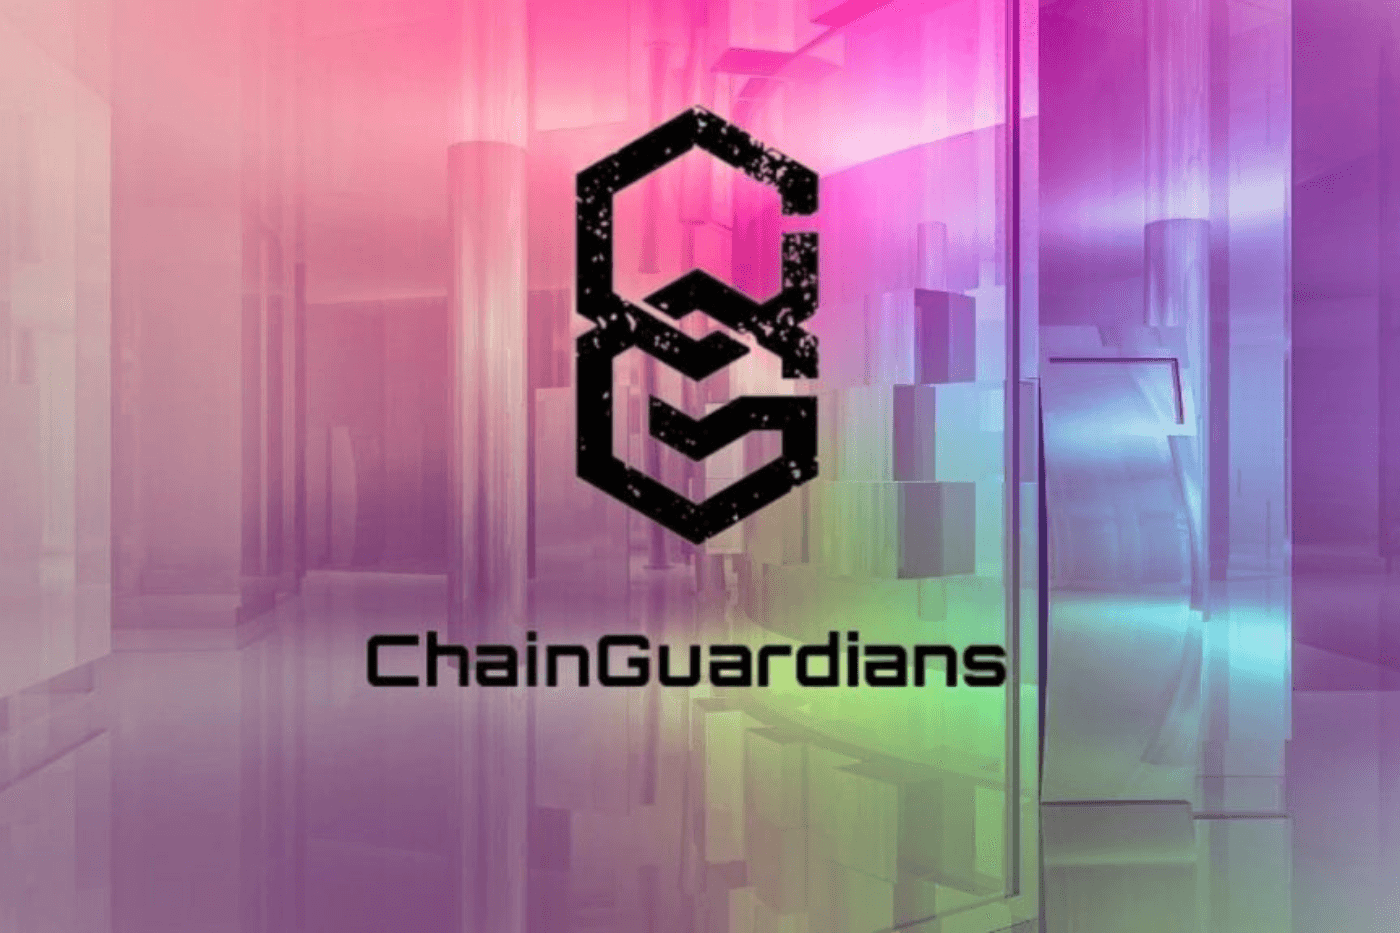 ChainGuardians Guardians Phygital Grant Program enterpreneurs Web3 and metaverse